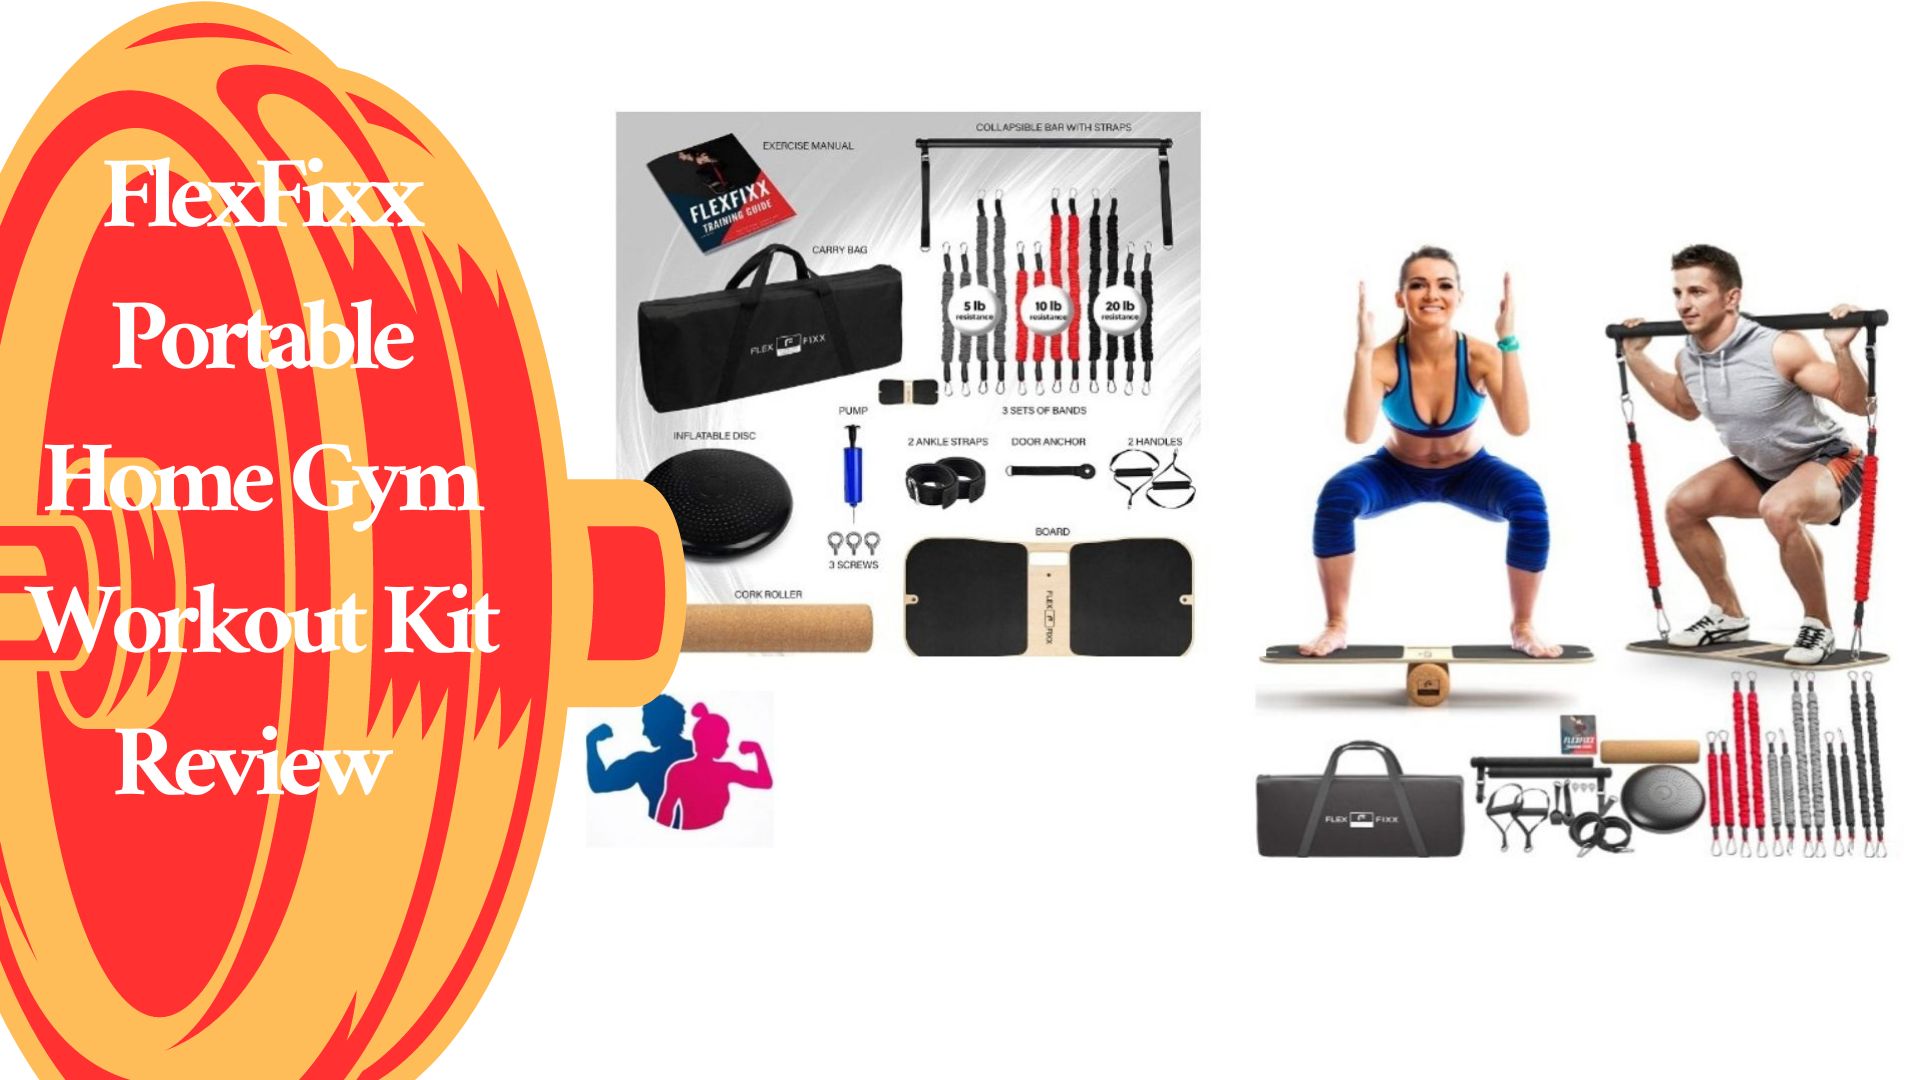 FlexFixx Portable Home Gym Workout Kit Review